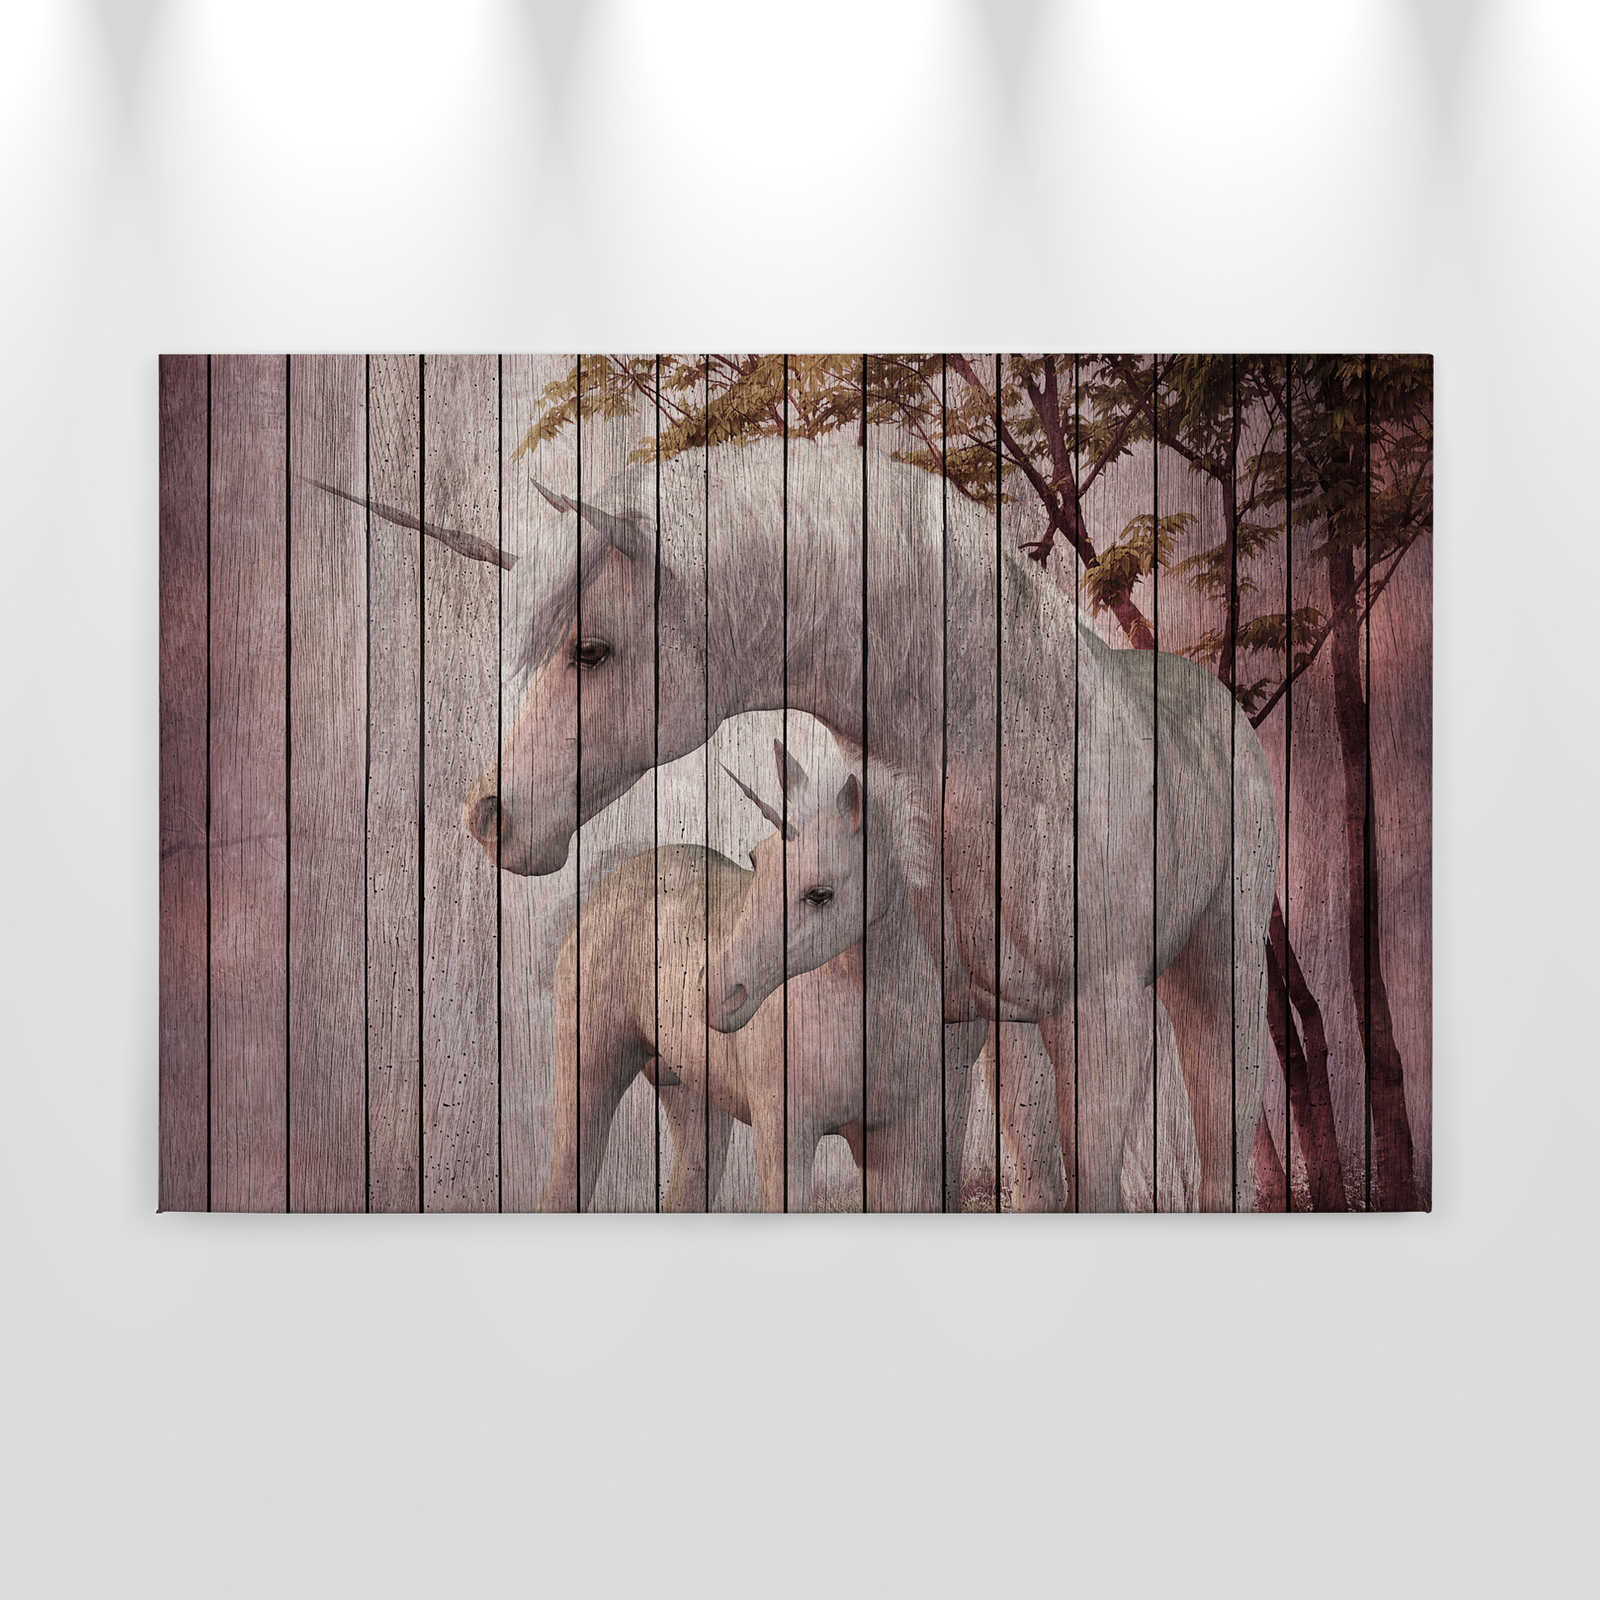             Fantasy 4 - Eenhoorn & houtlook canvas schilderij - 0.90 m x 0.60 m
        